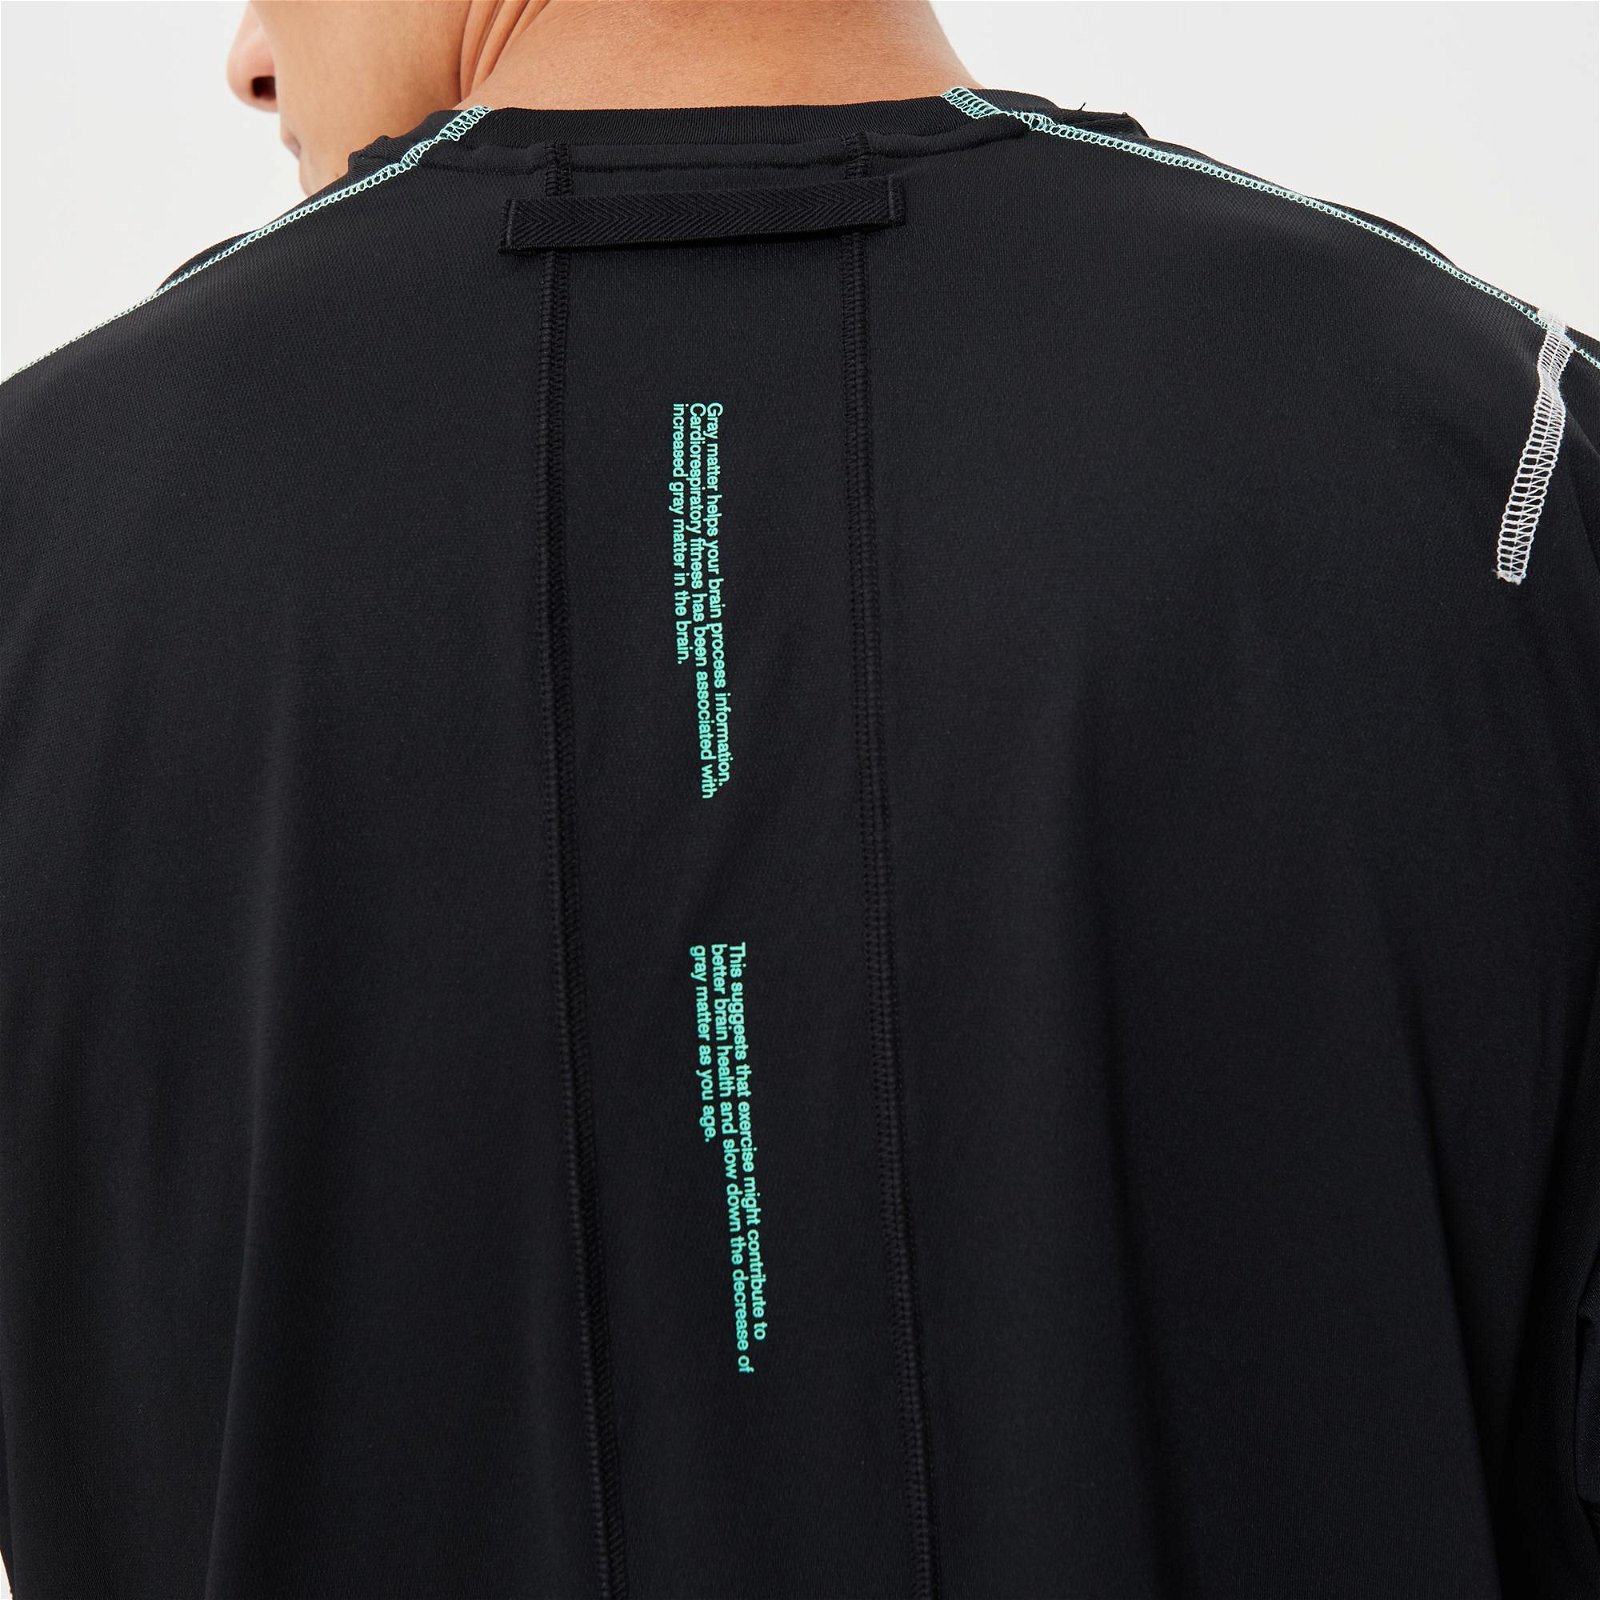 Nike Dri-FIT Hpr Dry Top Erkek Siyah T-Shirt